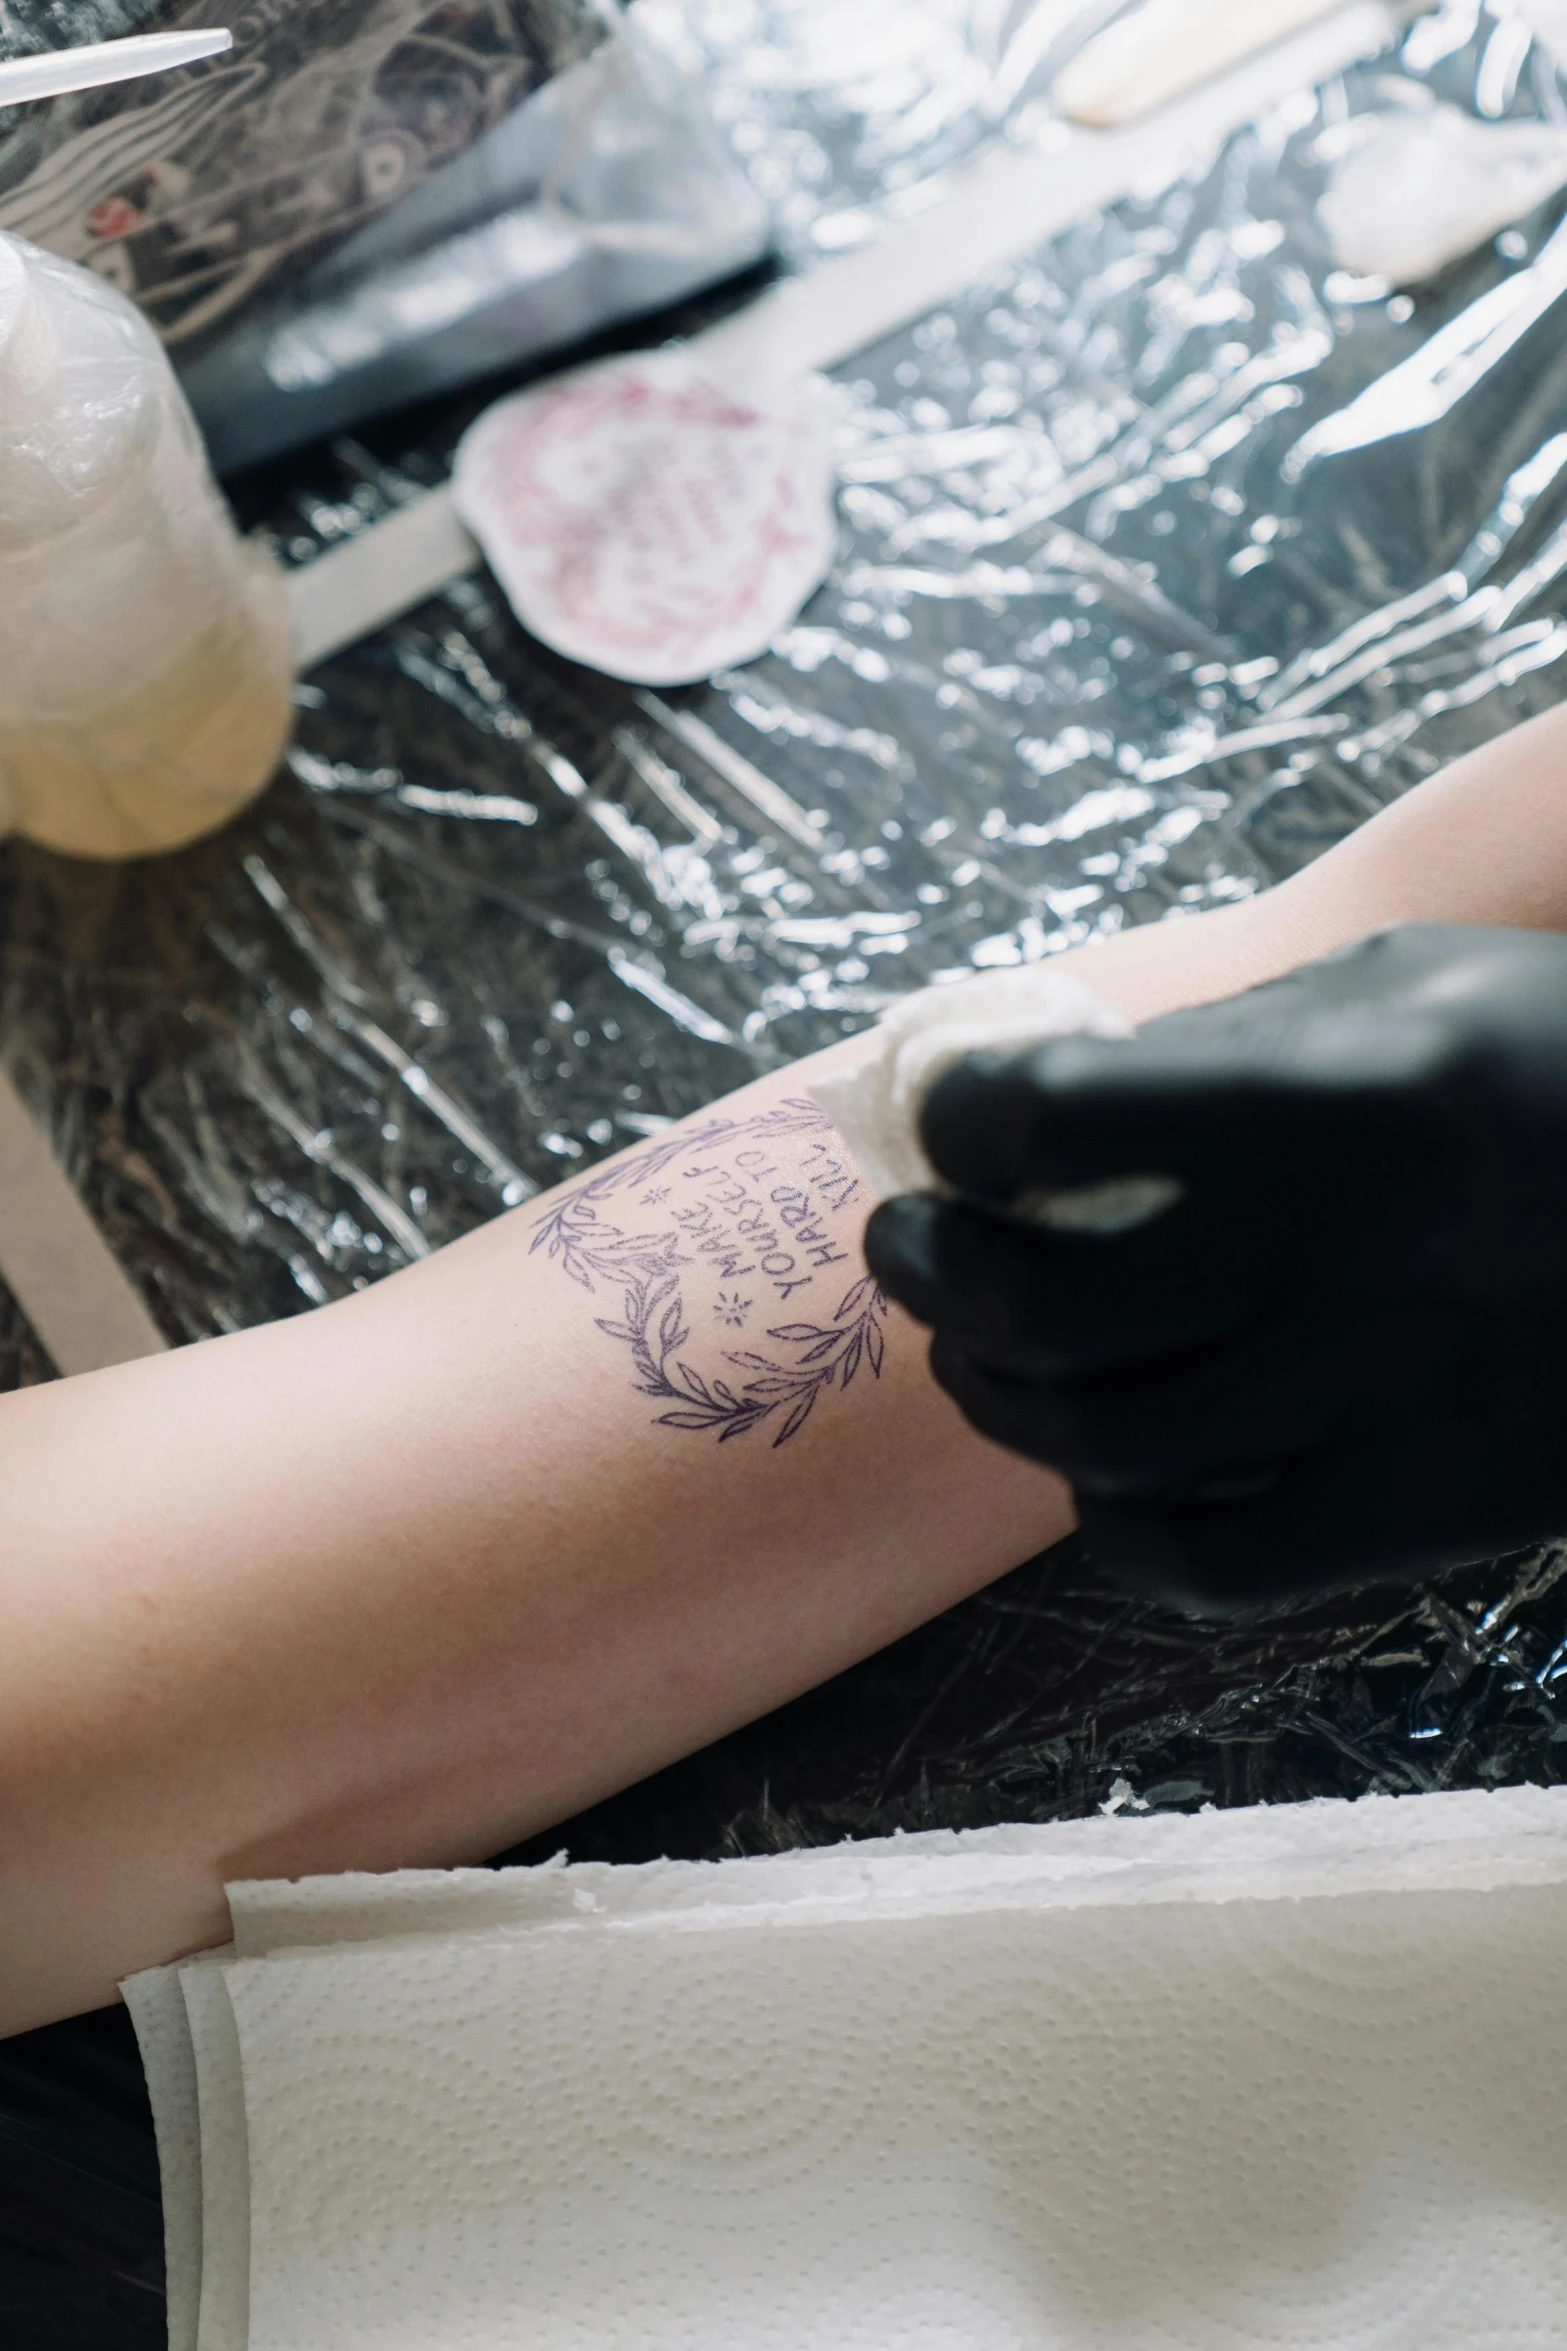 a tattoo artist has a tattoo on his arm